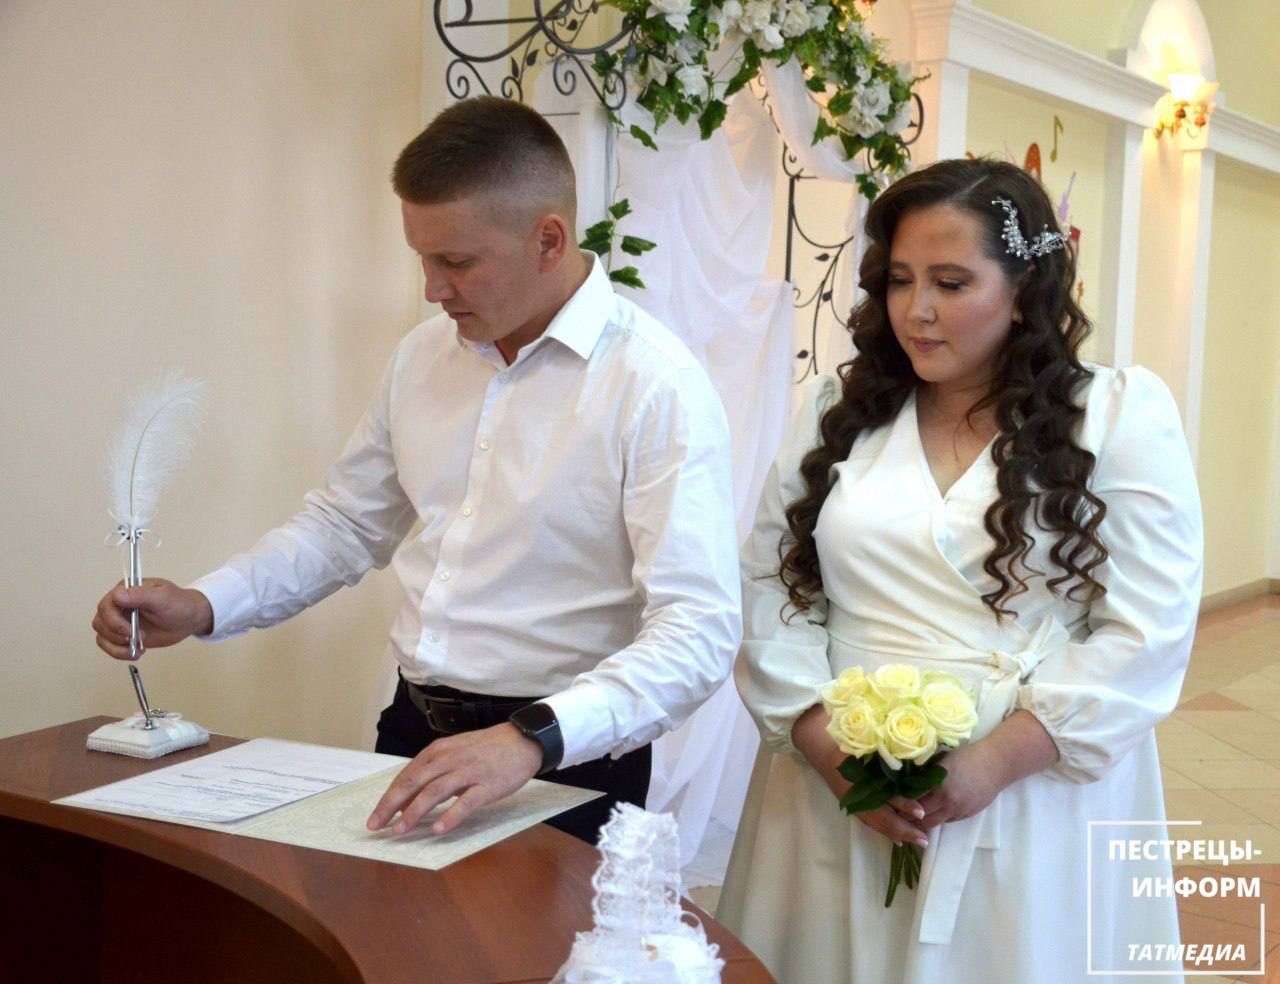 В пестречинском ЗАГСе состоялась регистрация брака в татарском народном стиле